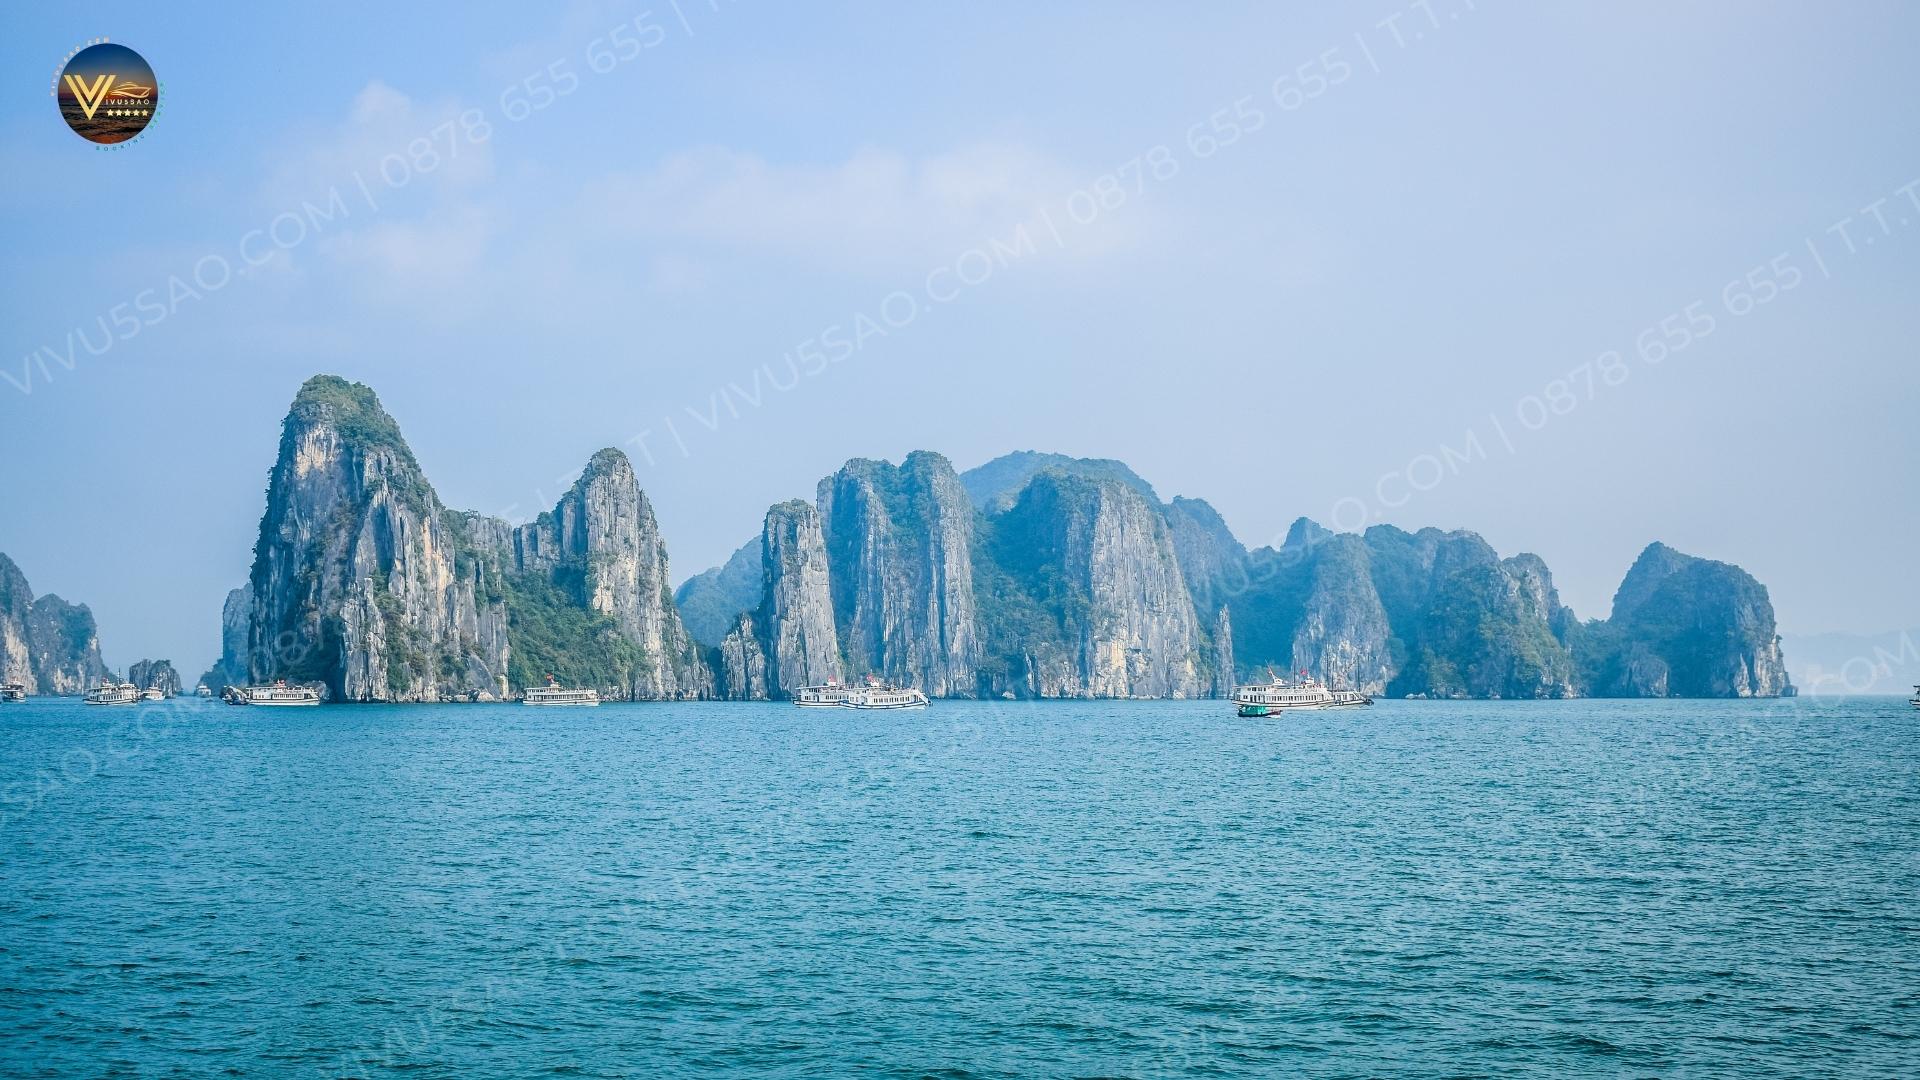 Điểm danh 9 di sản văn hóa, thiên nhiên thế giới nổi tiếng tại Việt Nam 2023